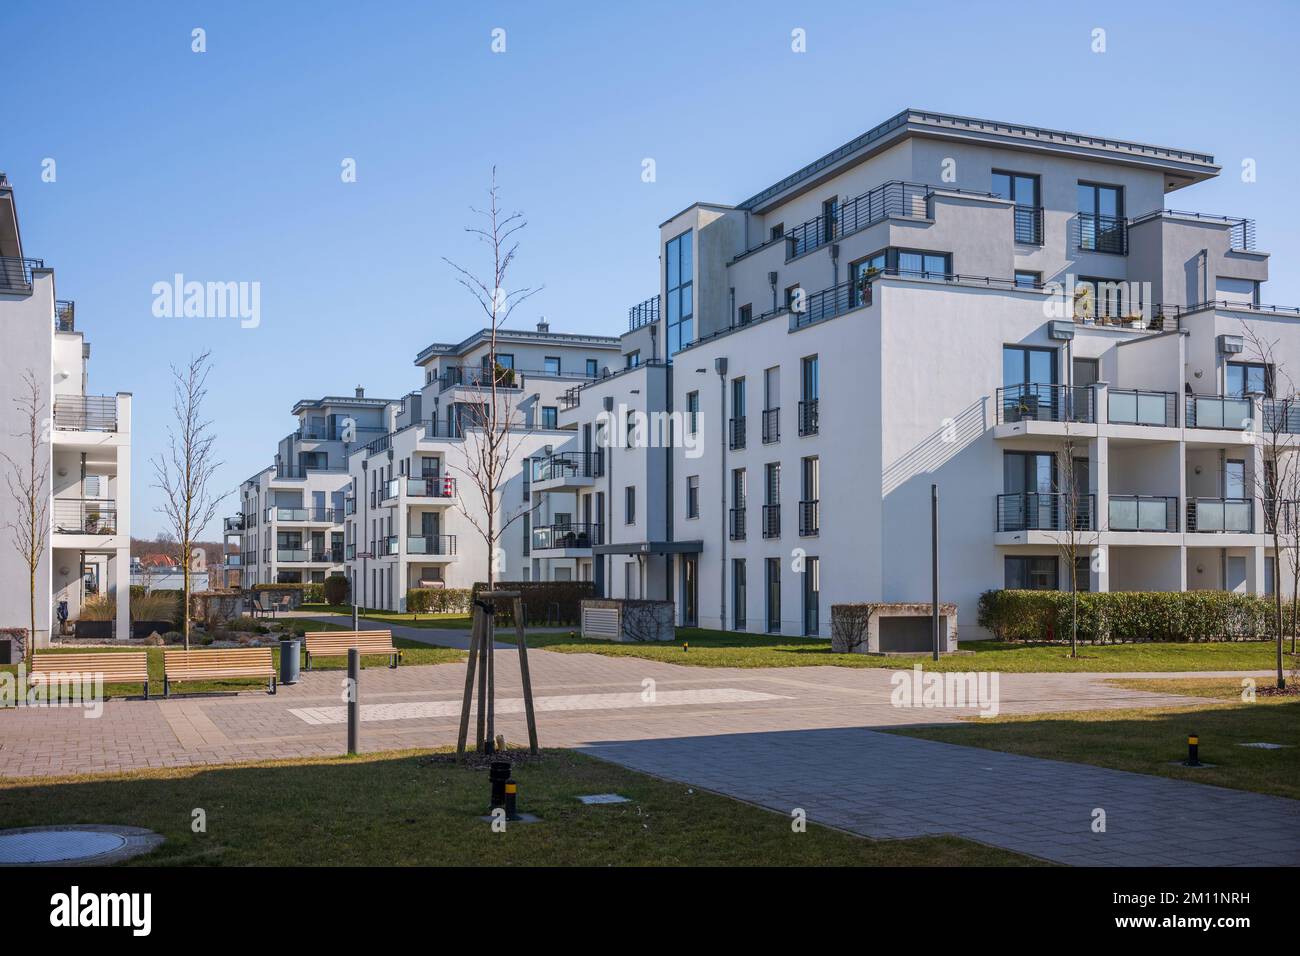 Complexes de logements modernes au printemps en journée dans une ville. Immobilier en Allemagne. Banque D'Images